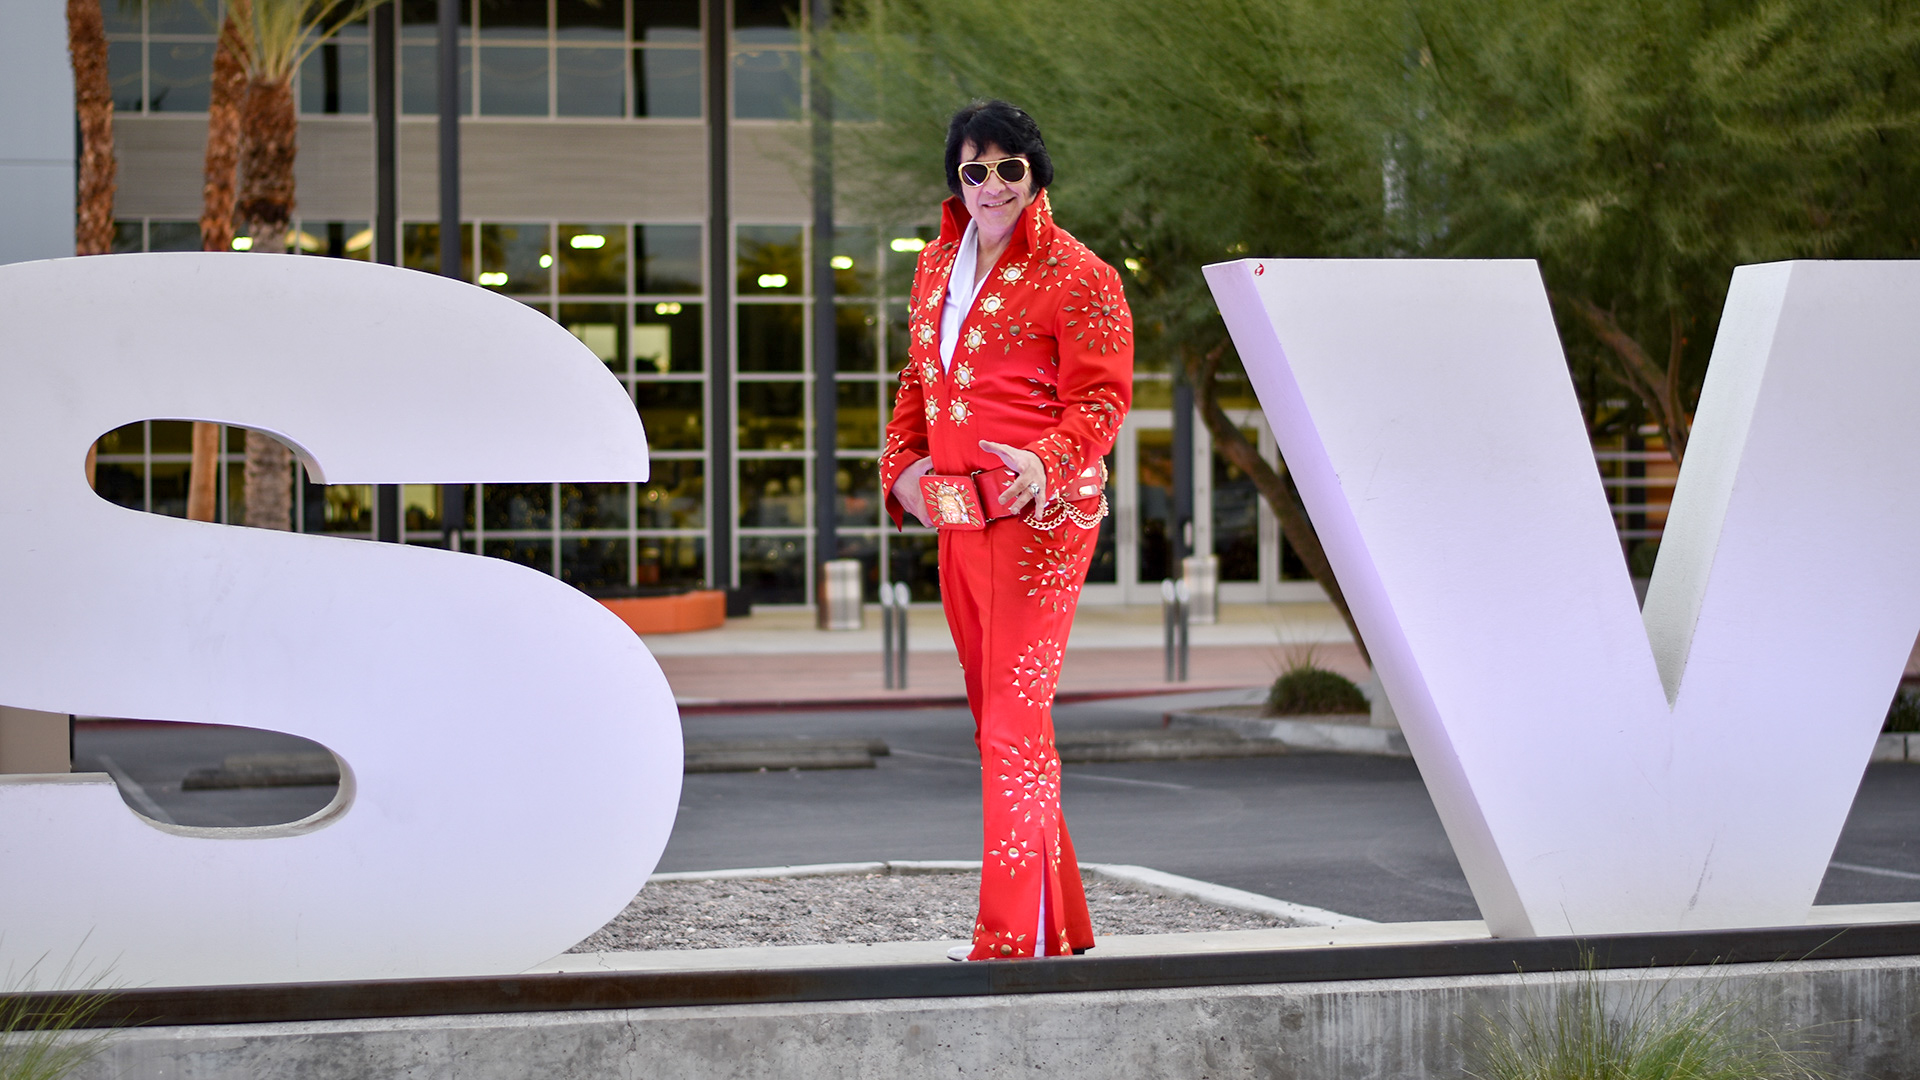 Las Vegas Elvis Impersonator, Michael Conti